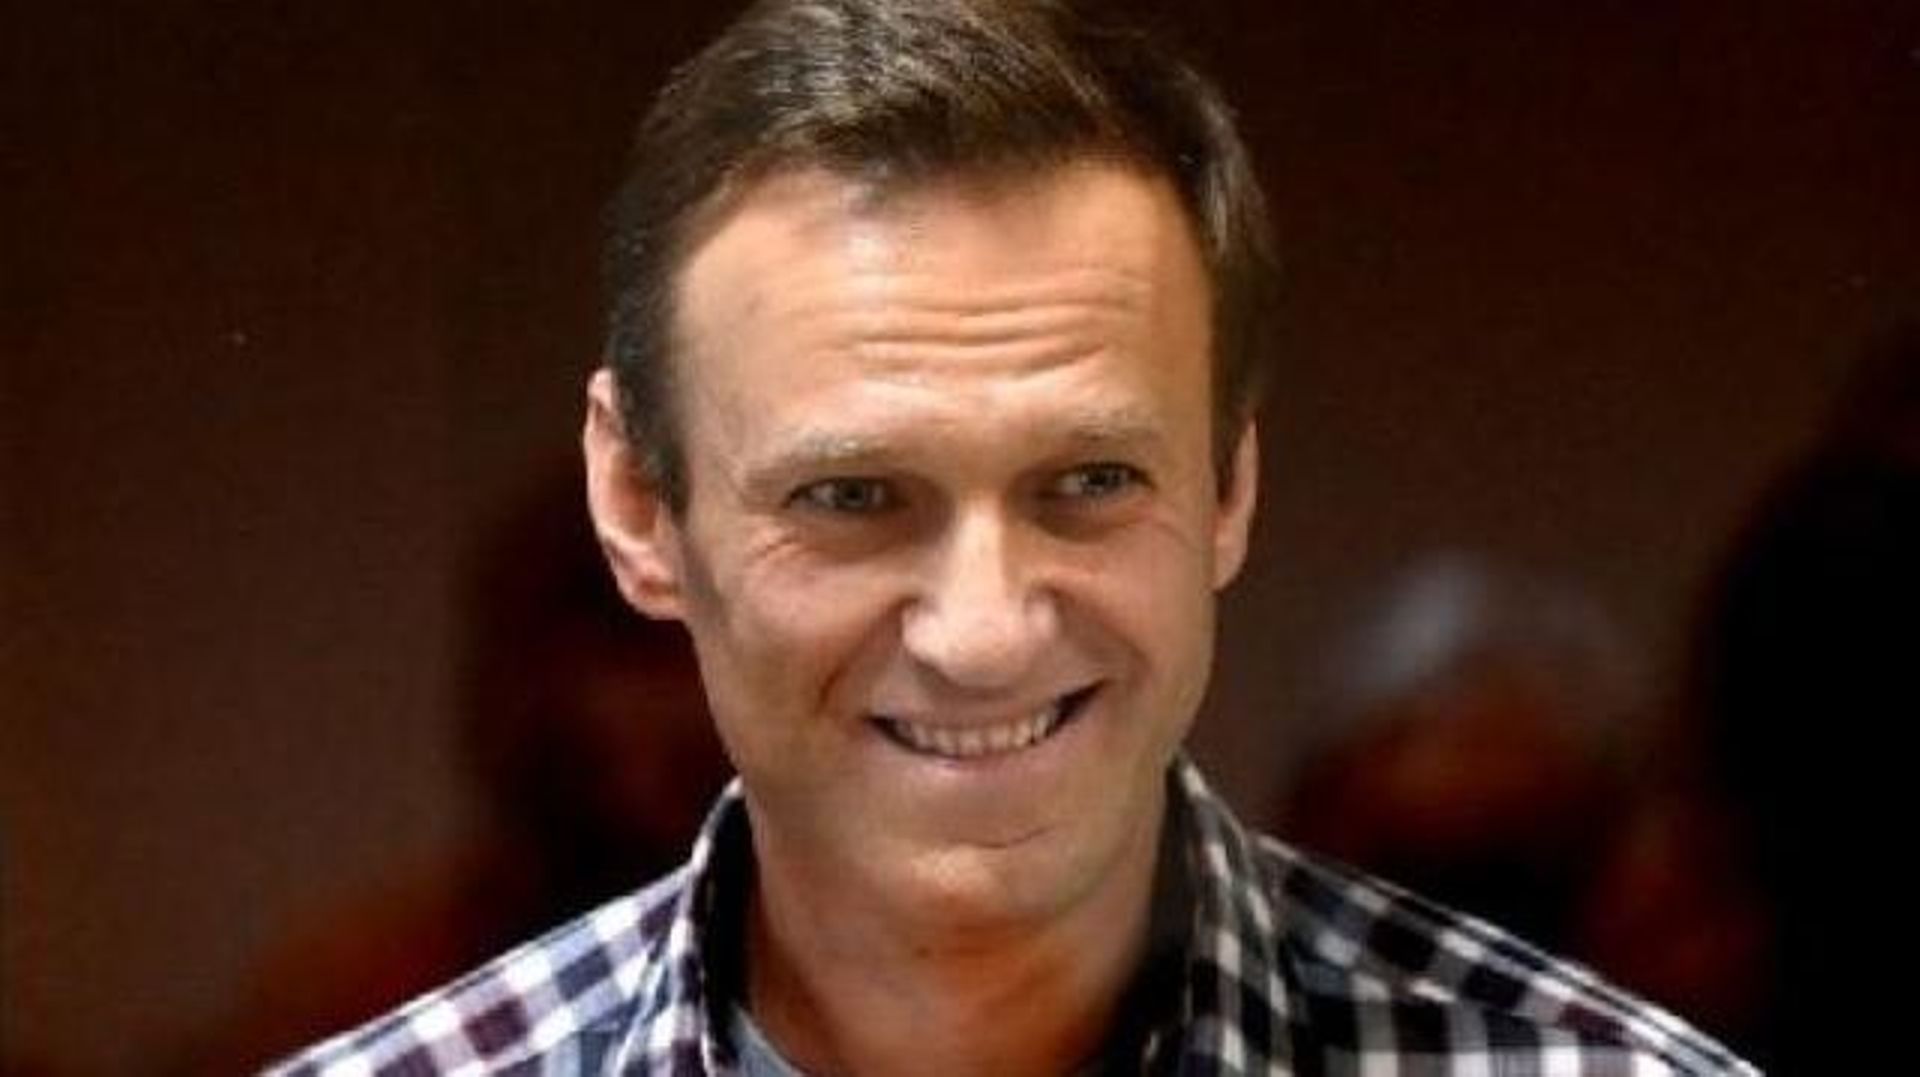 Emprisonnement de Navalny - Biden juge le sort de l'opposant russe Navalny "totalement injuste"